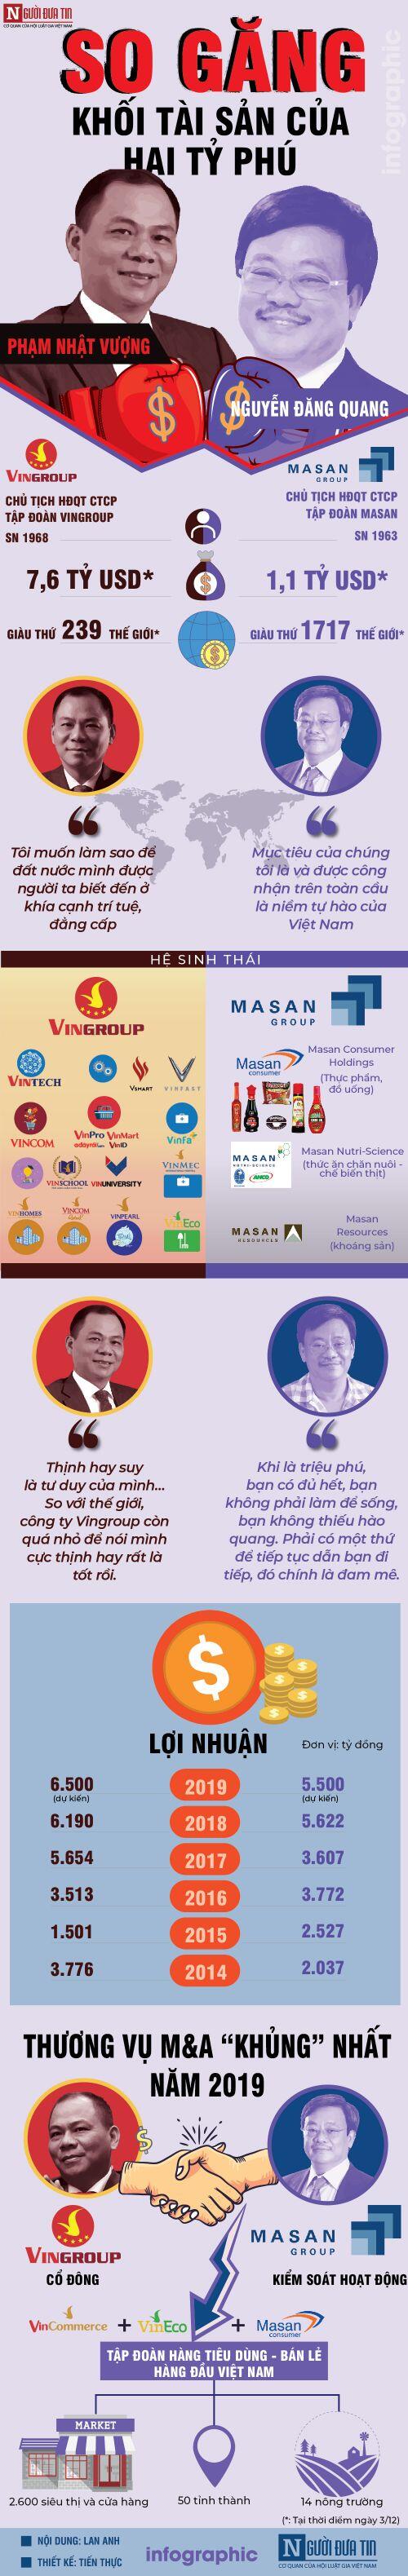 [Info] So găng khối tài sản của hai tỷ phú Vingroup Phạm Nhật Vượng và tỷ phú Masan Nguyễn Đăng Quang